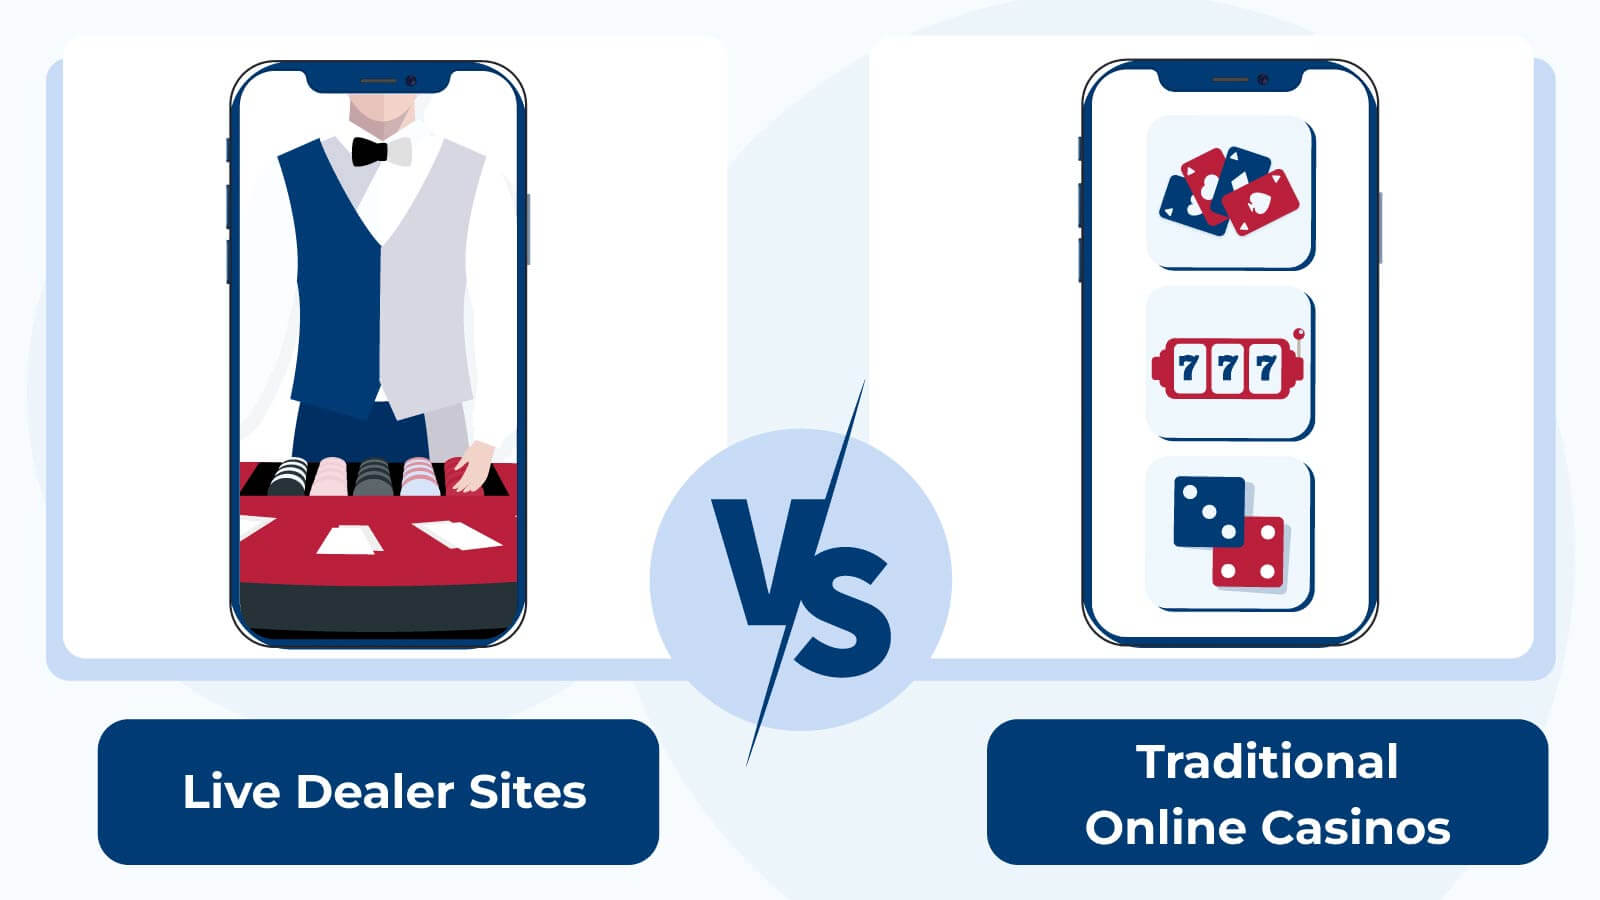 Live Dealer Sites Vs. Traditional Online Casinos